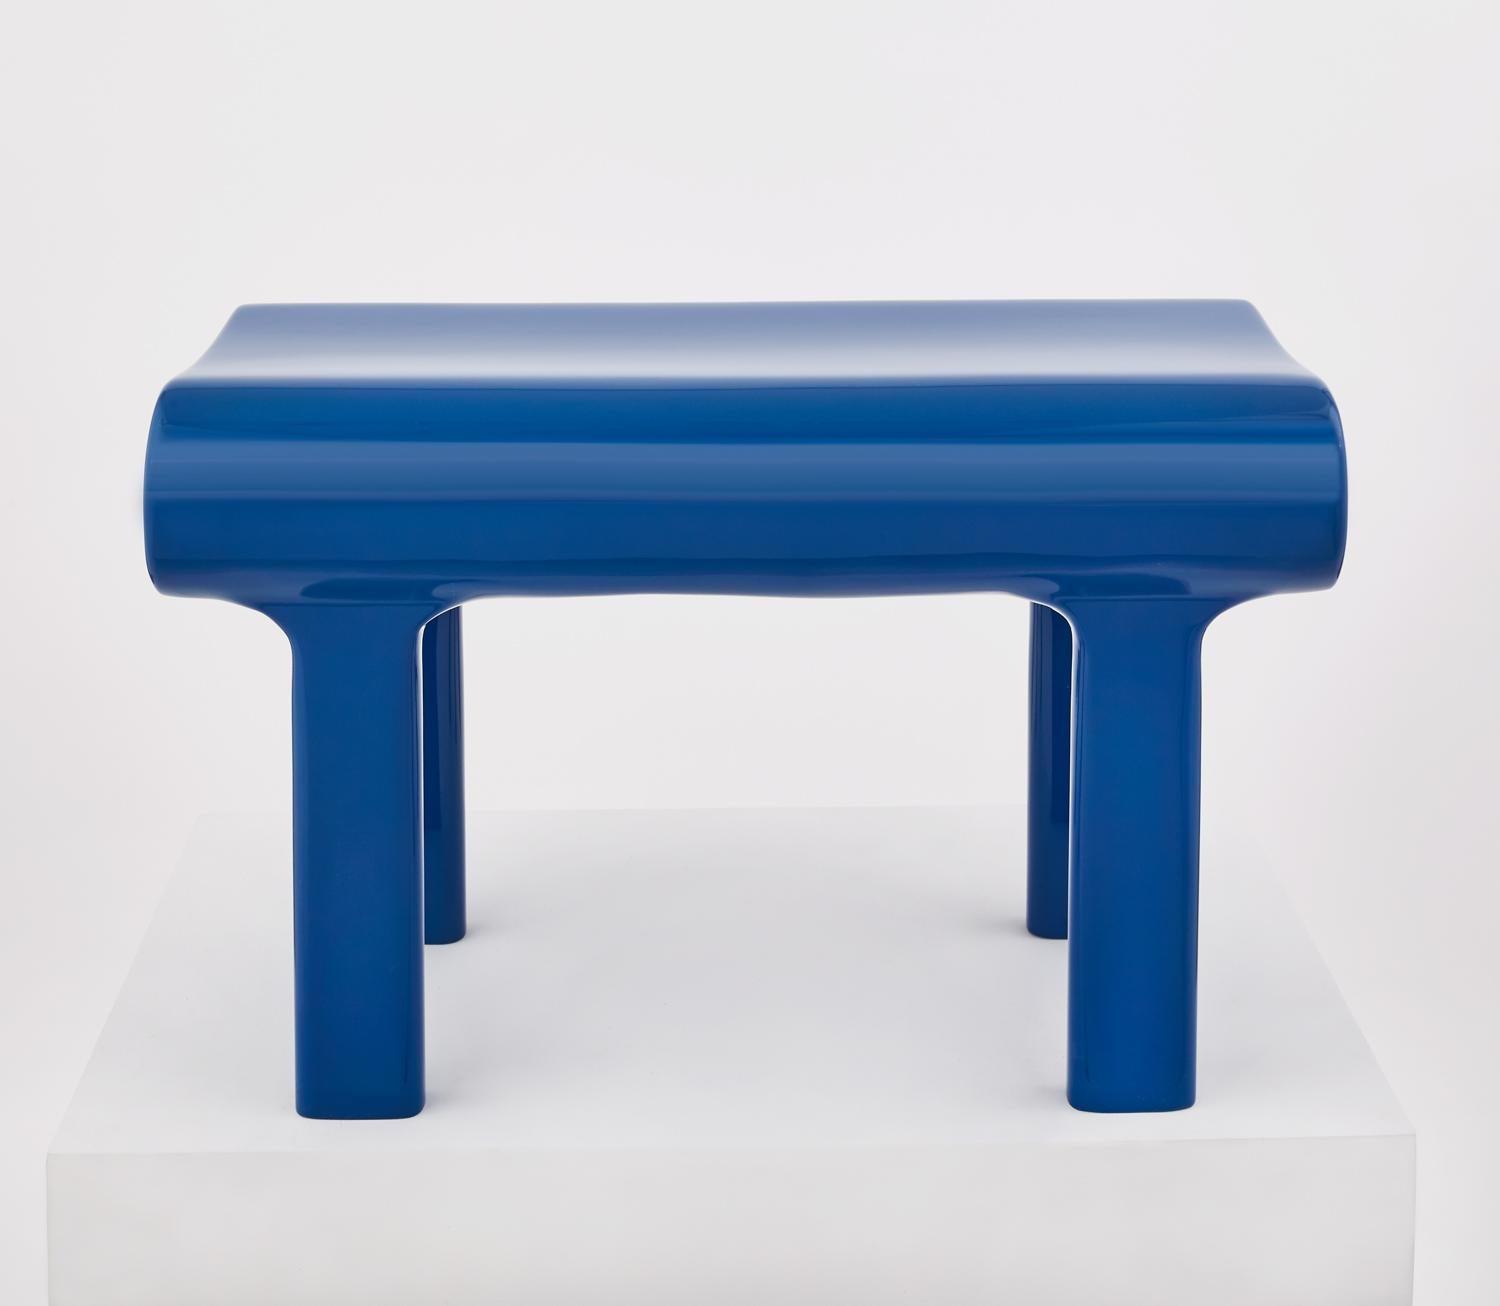 Banc contemporain sculpté en bois bleu avec finition acrylique. Chaque banc est construit en hêtre massif et revêtu d'une finition acrylique brillante. Conçu par Zelonky Studios, une icône minimaliste instantanée, rejoignant le panthéon des